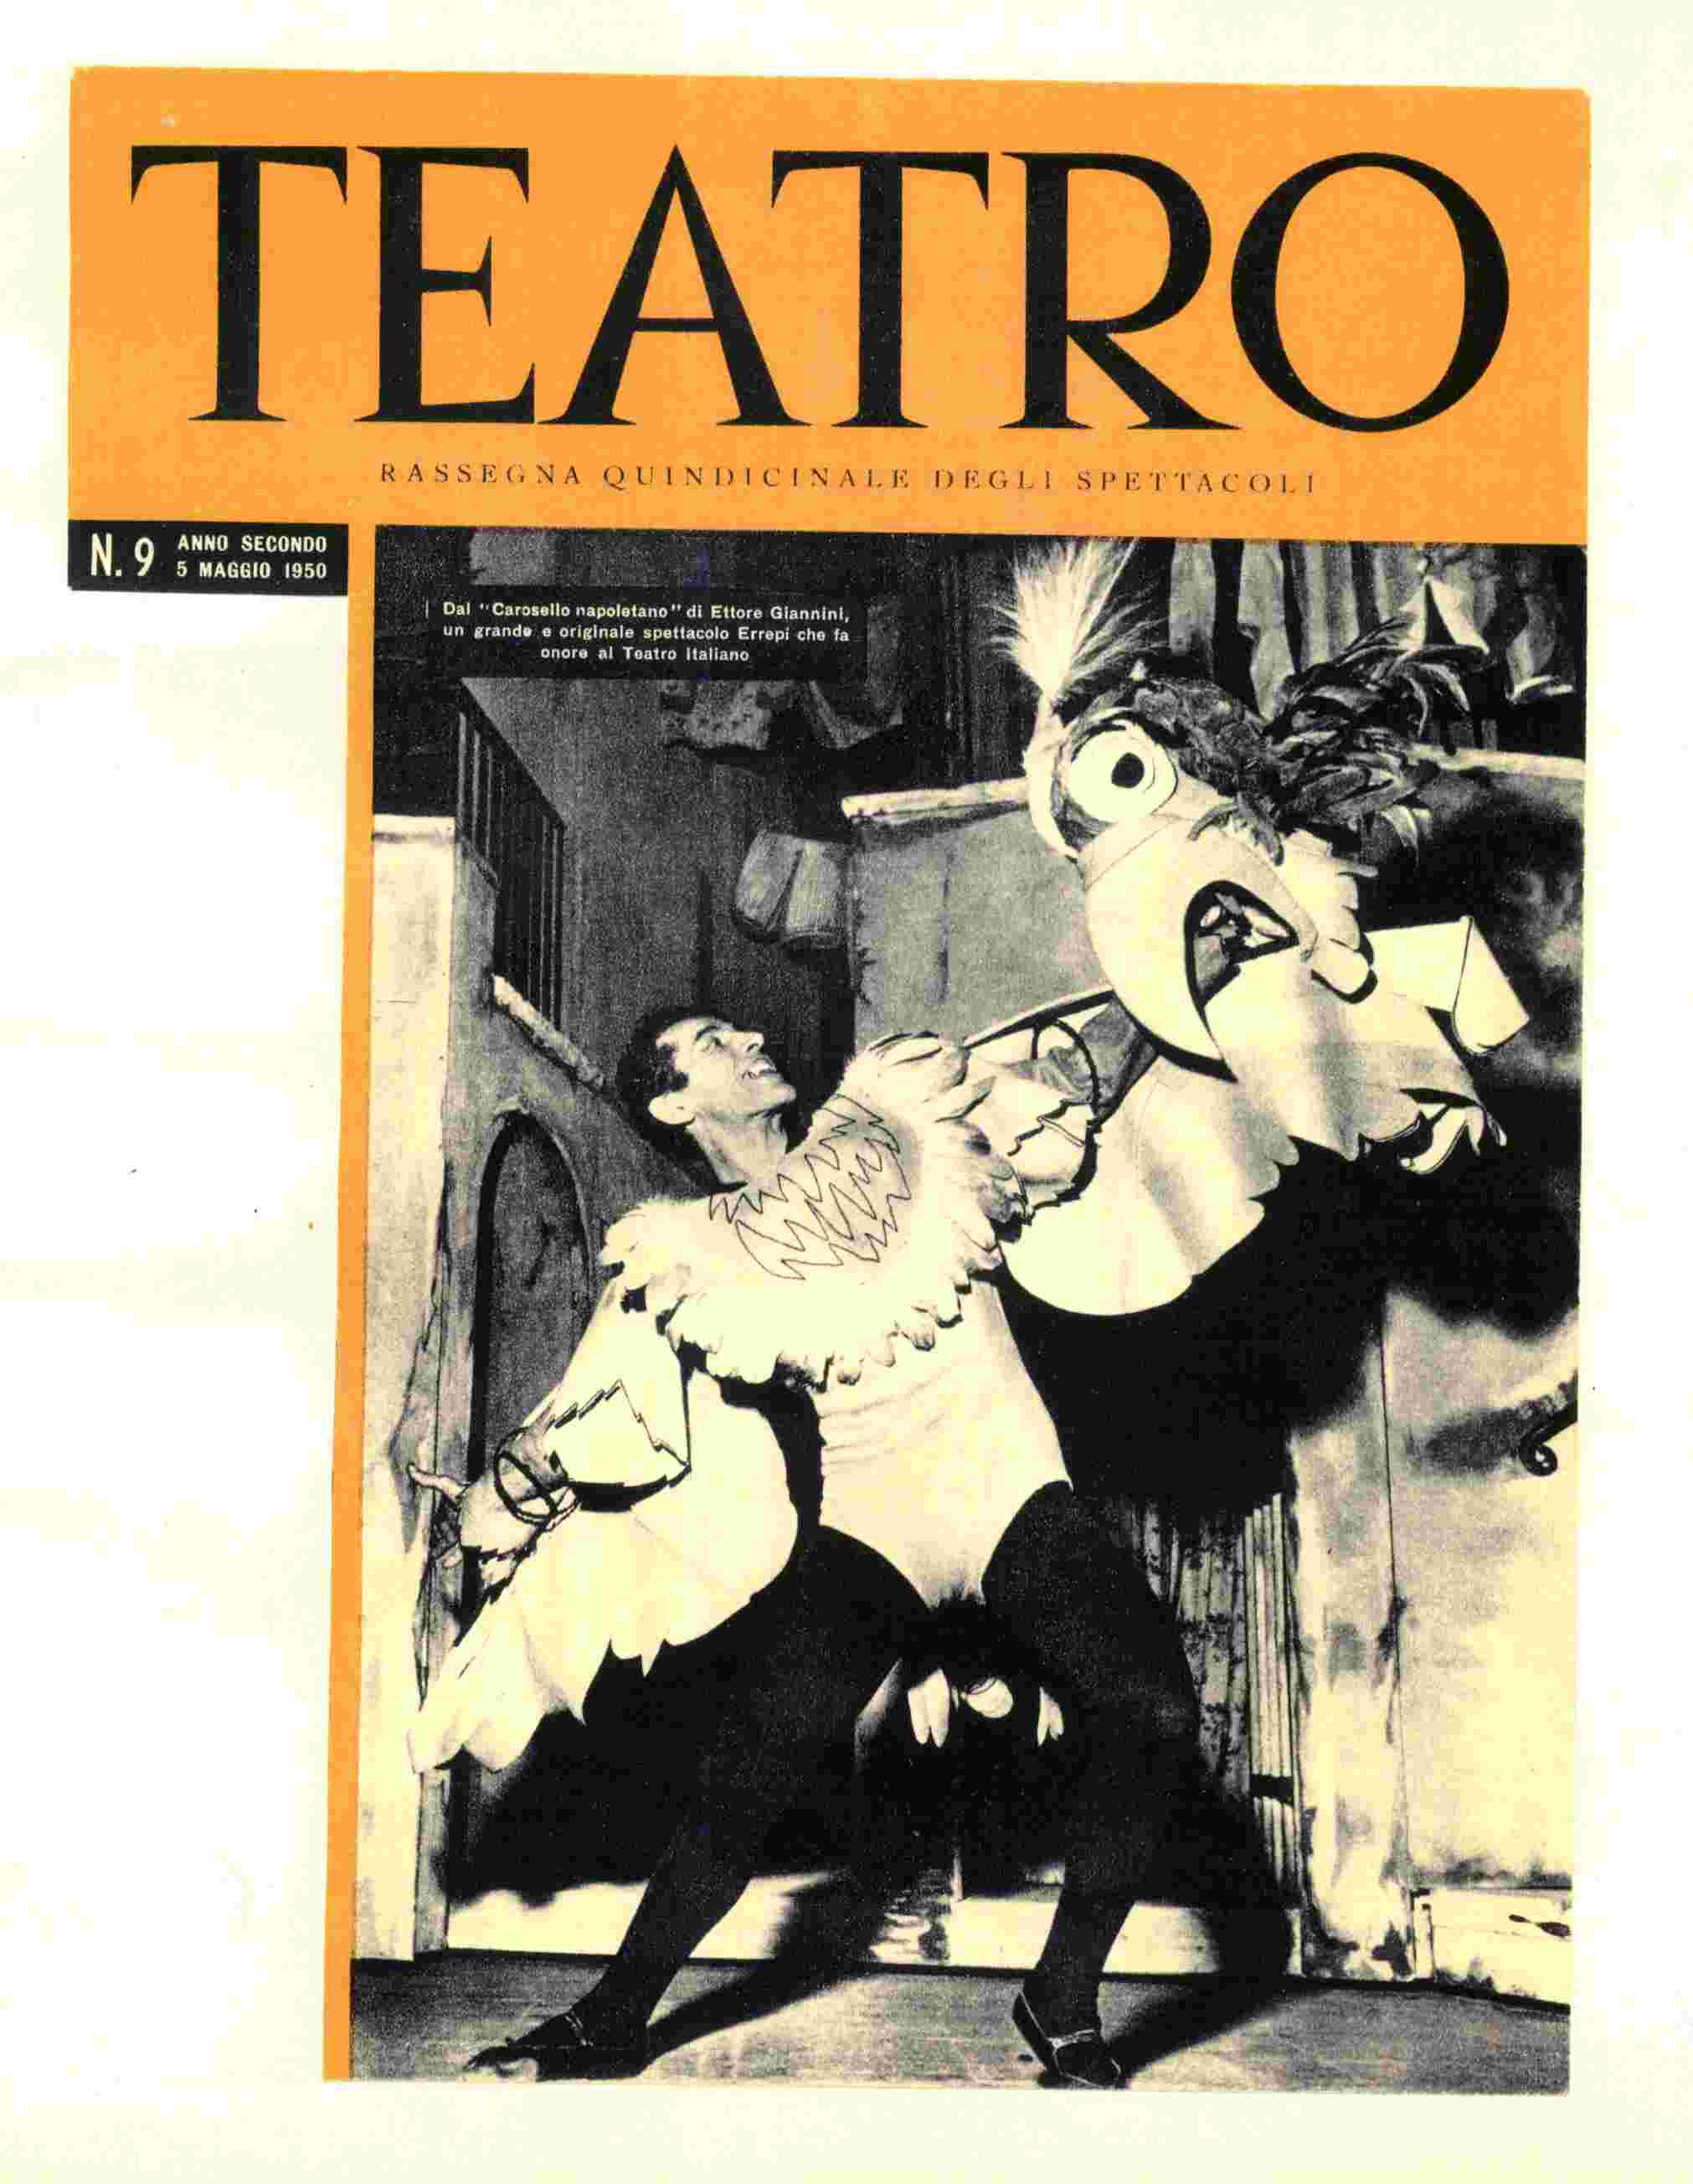 Copertina di un fascicolo del periodico "Teatro", con immagine dello spettacolo "Carosello napoletano"